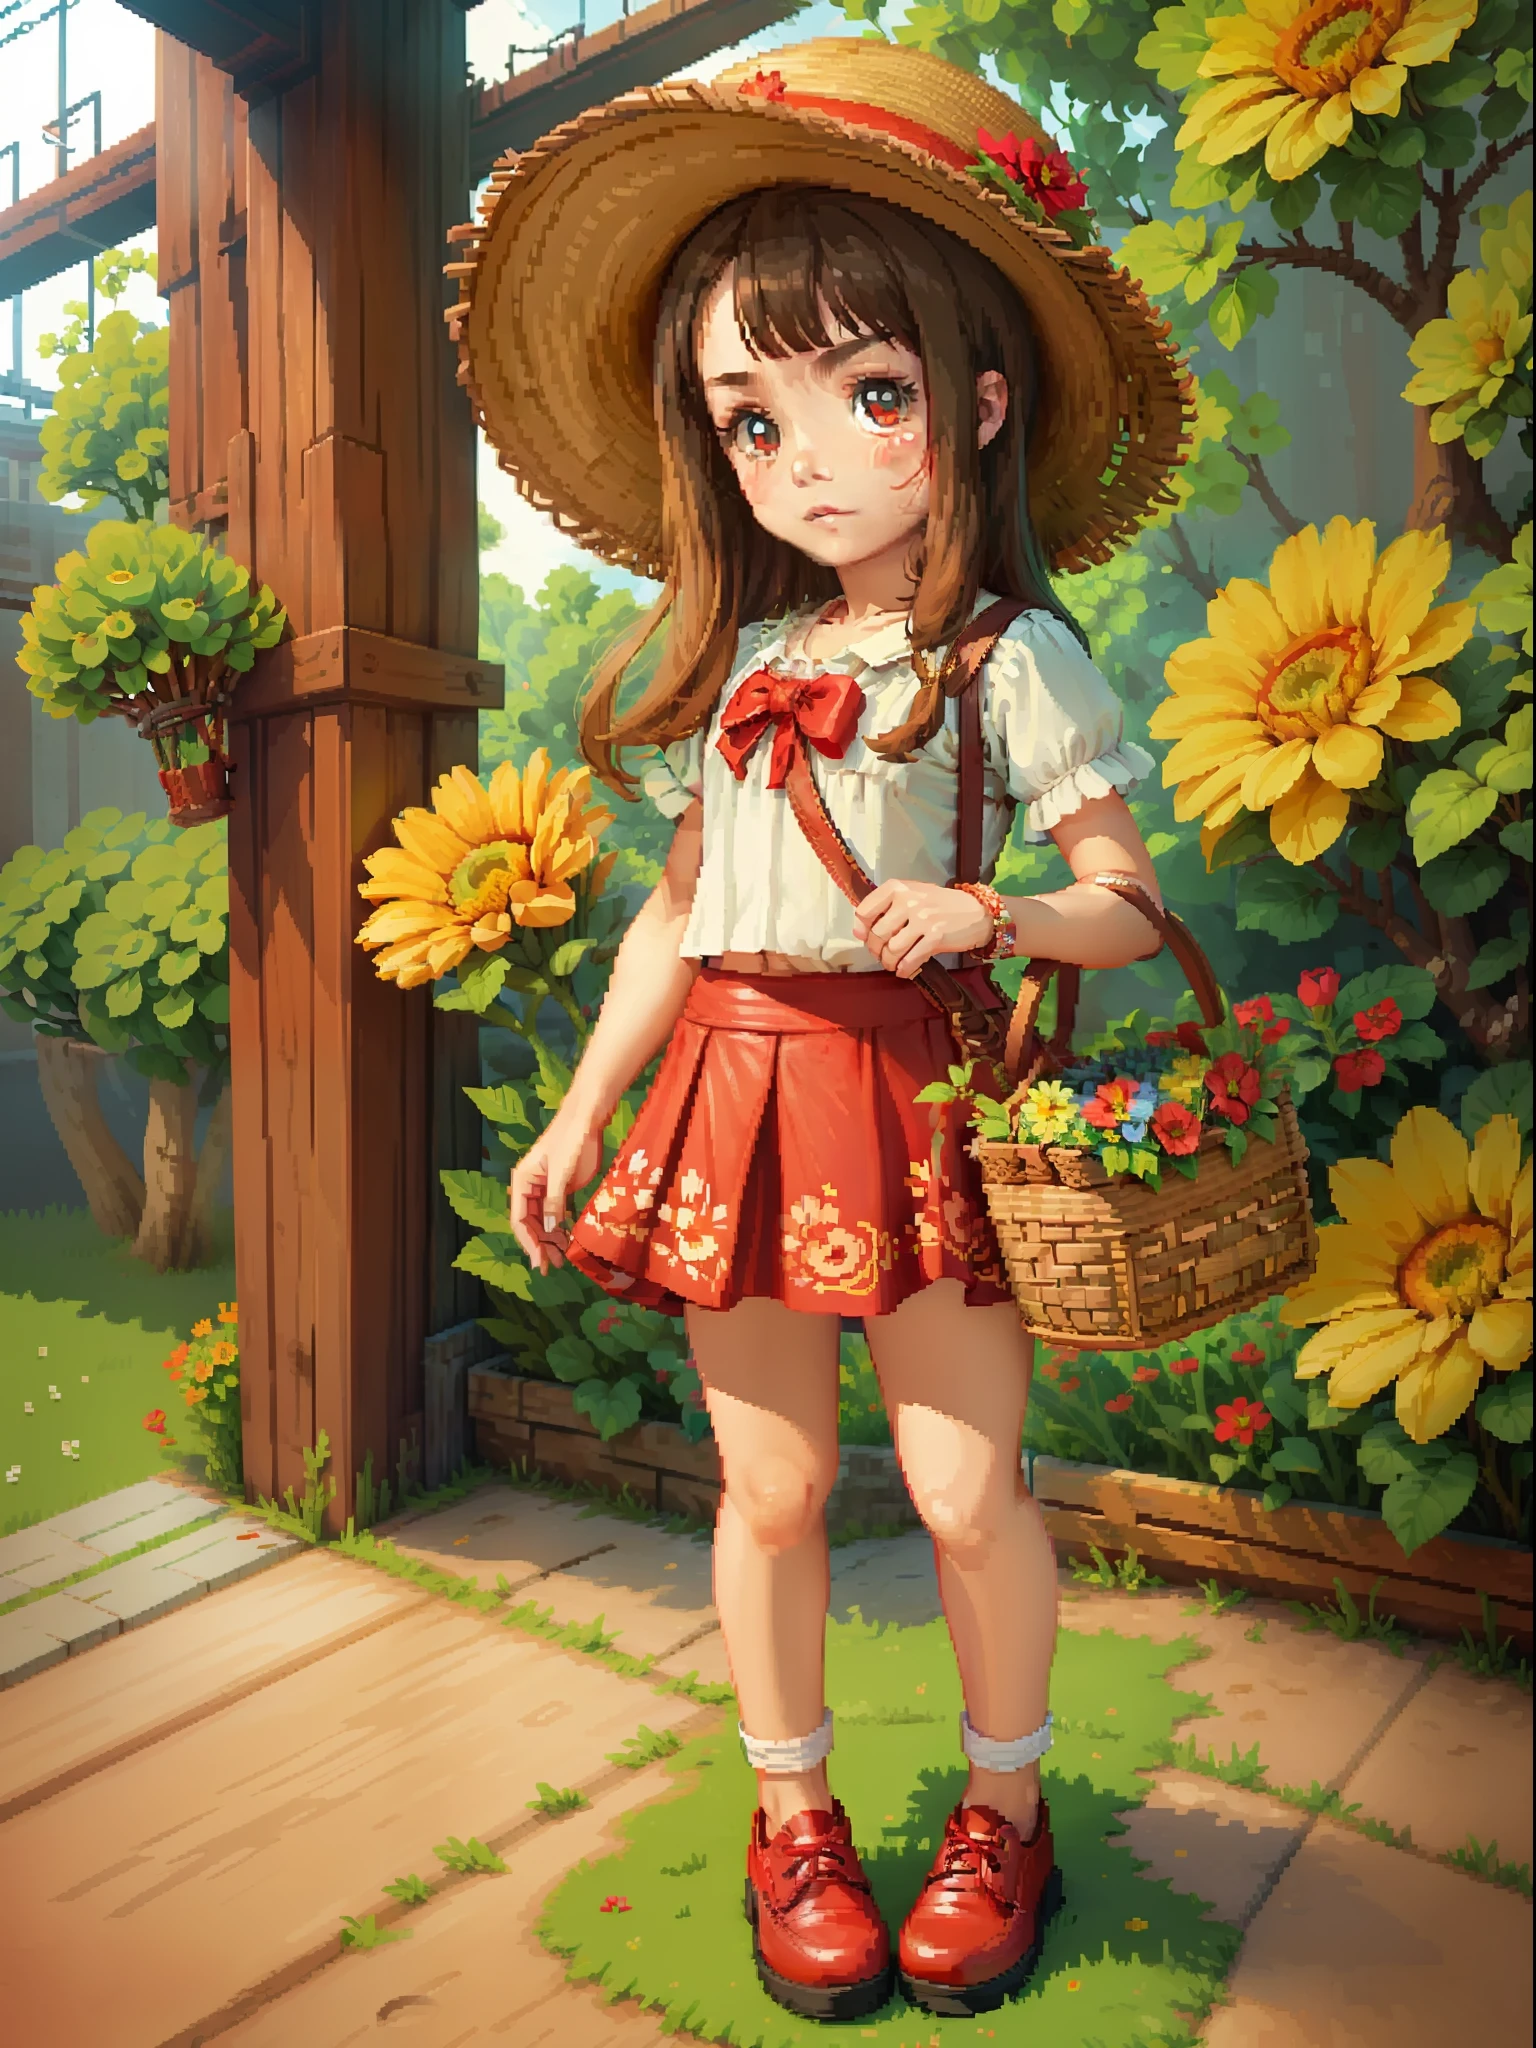 AQ 버전 , 밀짚 모자, 꽃바구니, 꽃무늬 스커트, 작은 빨간 가죽 신발, (((강력한 픽셀 스타일)))